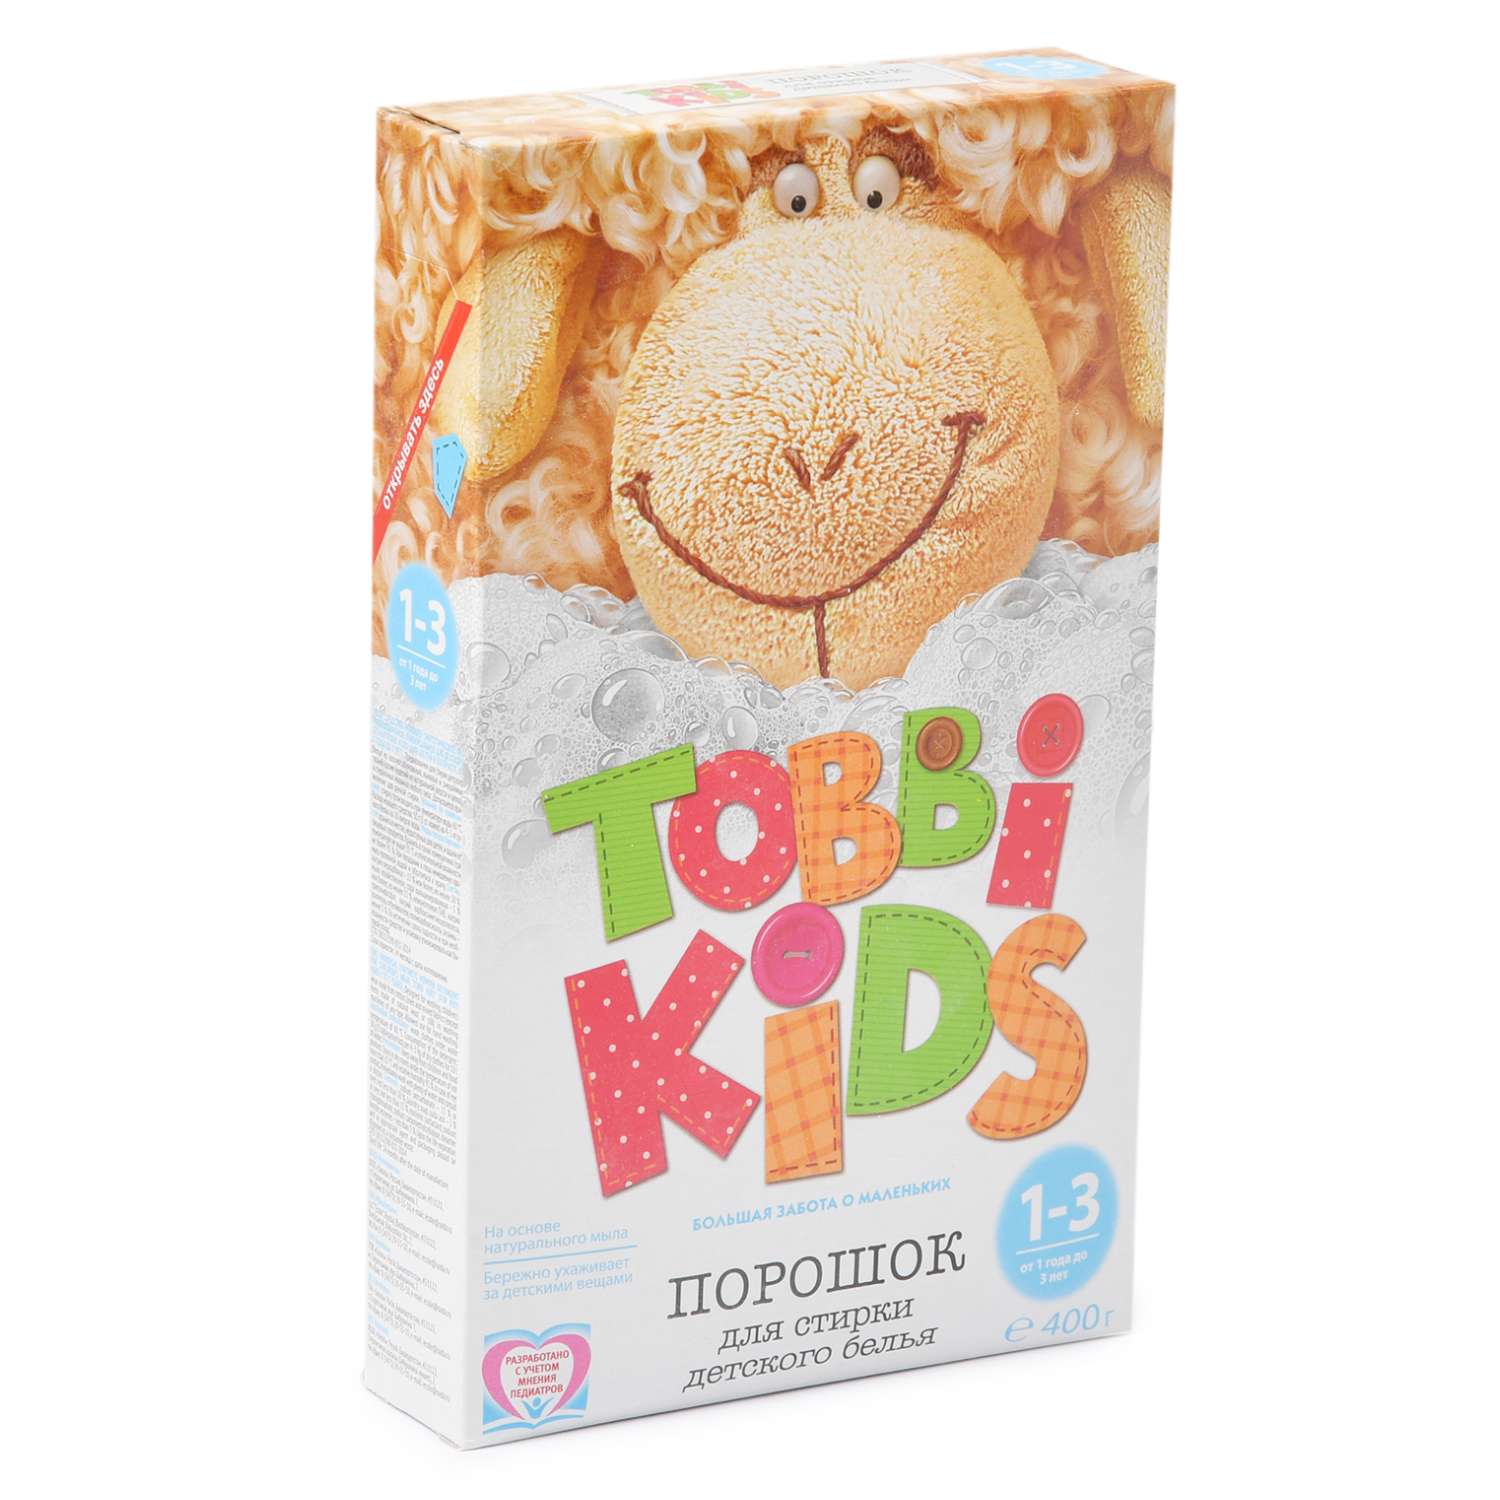 Порошок Tobbi Kids для стирки детского белья 1-3 400г - фото 1